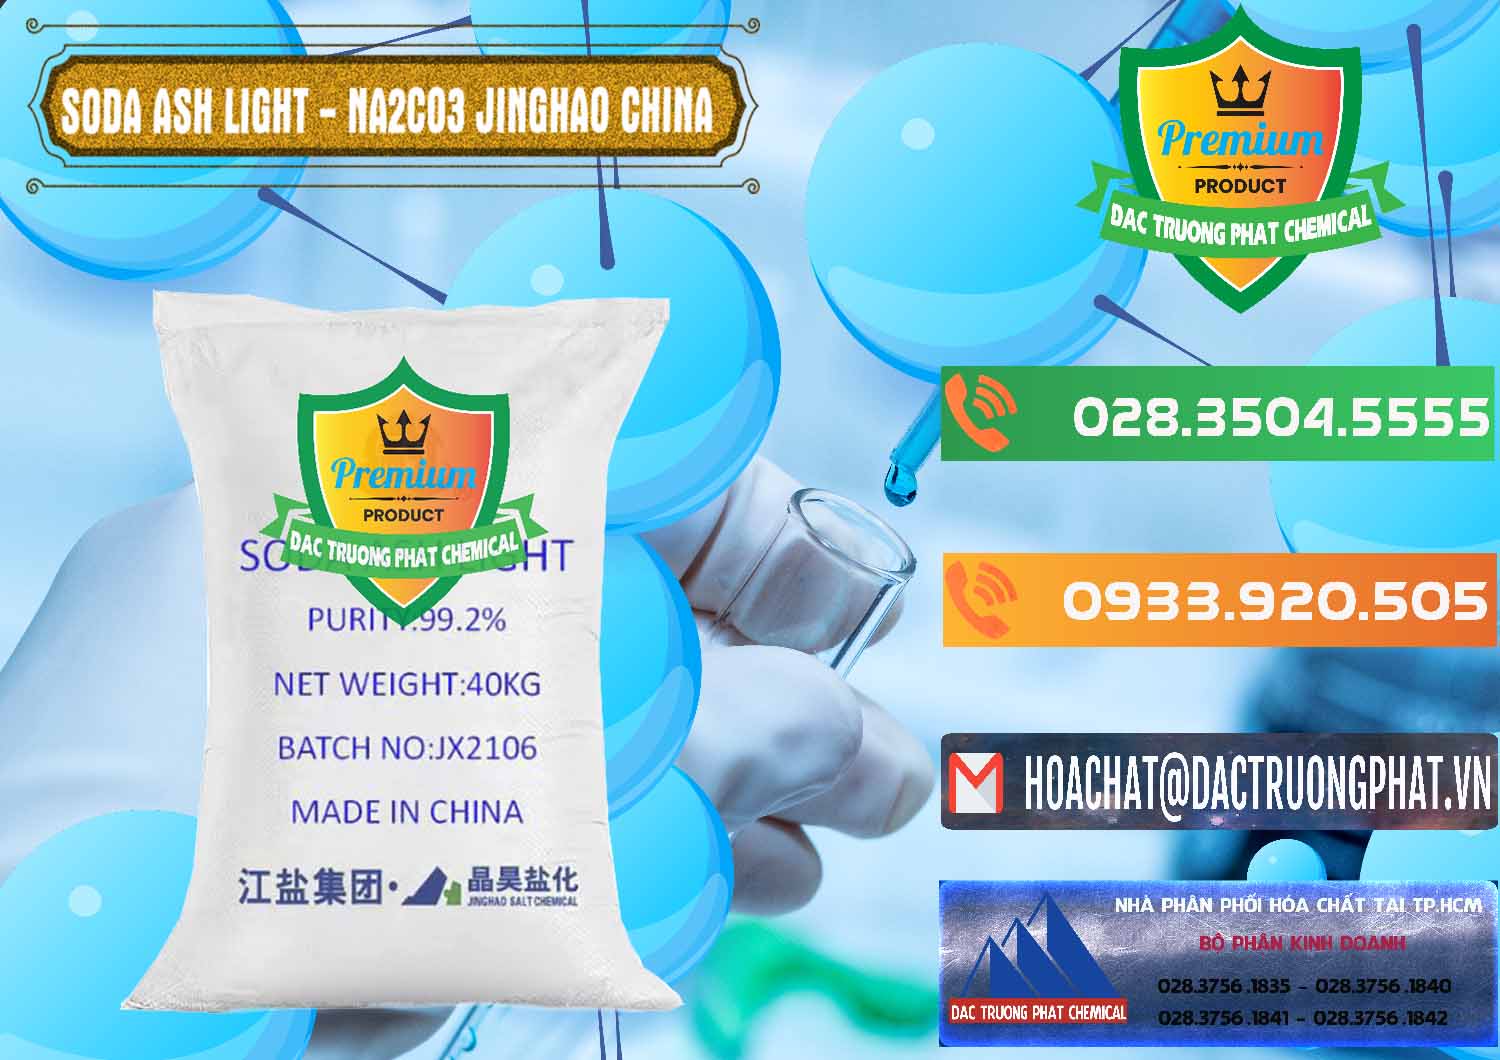 Nơi chuyên bán ( cung cấp ) Soda Ash Light - NA2CO3 Jinghao Trung Quốc China - 0339 - Công ty chuyên cung cấp ( nhập khẩu ) hóa chất tại TP.HCM - hoachatxulynuoc.com.vn